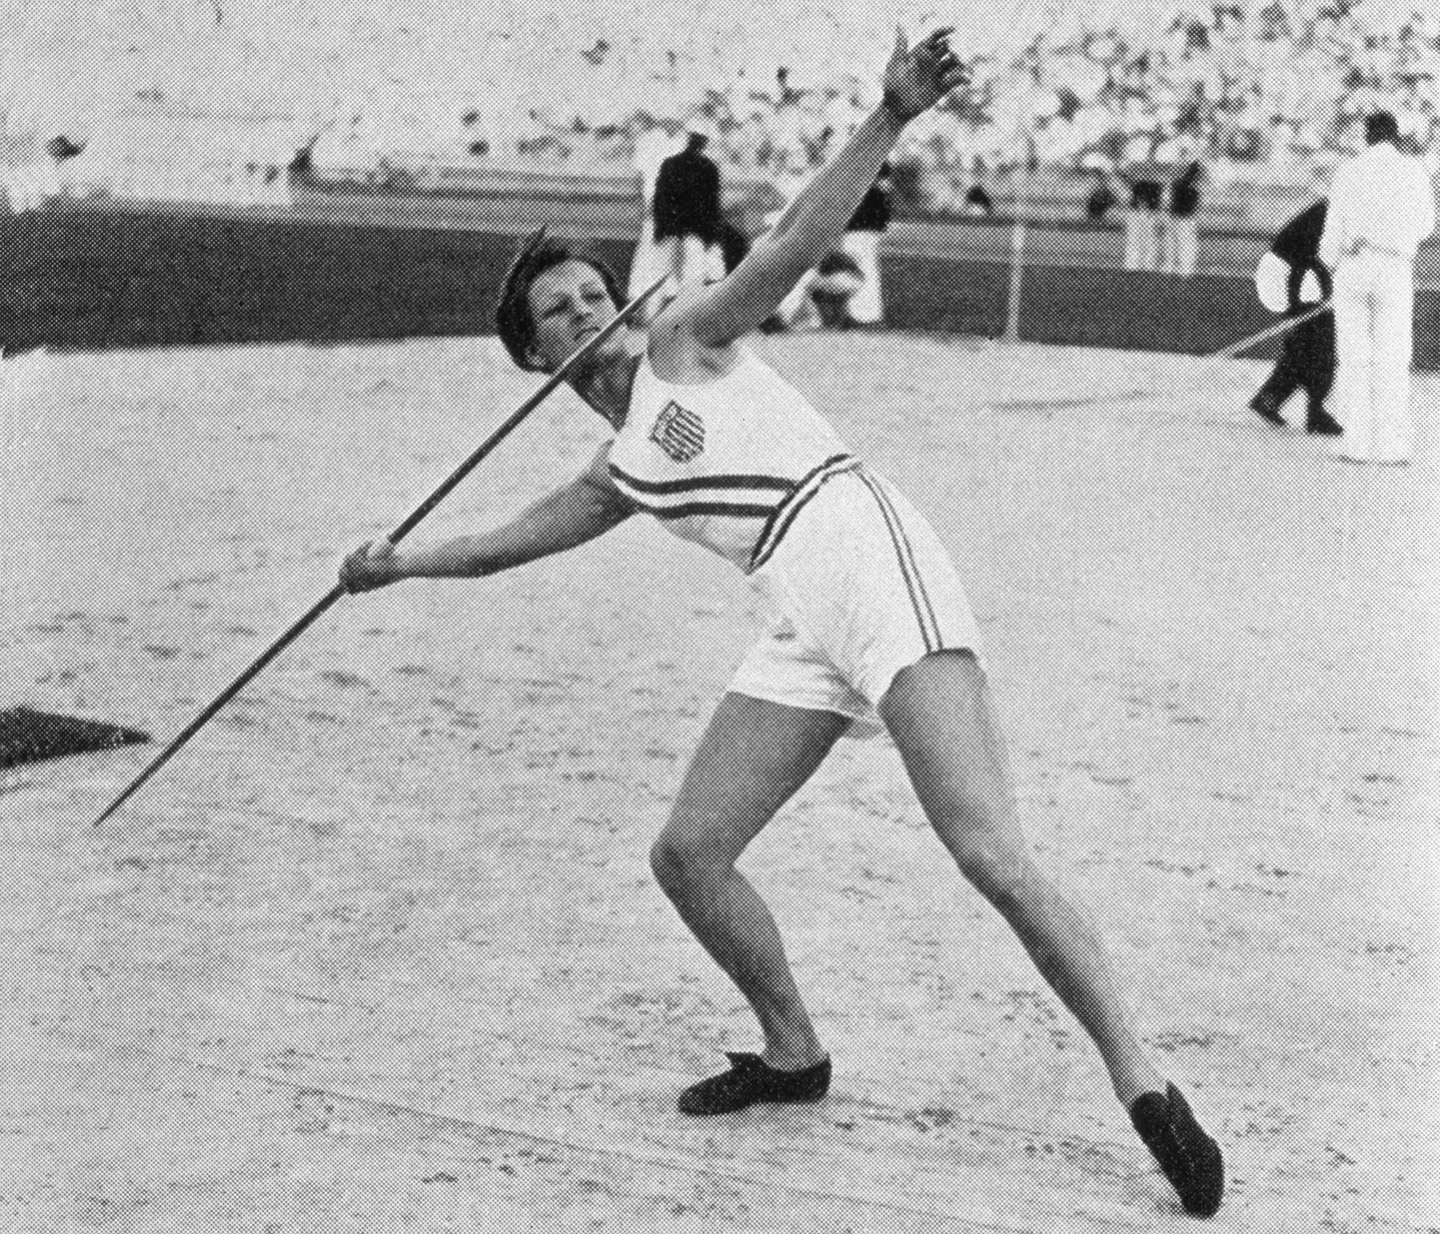 Cô Babe Didrikson đạt huy chương vàng tại Olympic Mùa hè năm 1932 tại Los Angeles ở nội dung ném lao điền kinh dành cho nữ. (Ảnh: Getty Images)